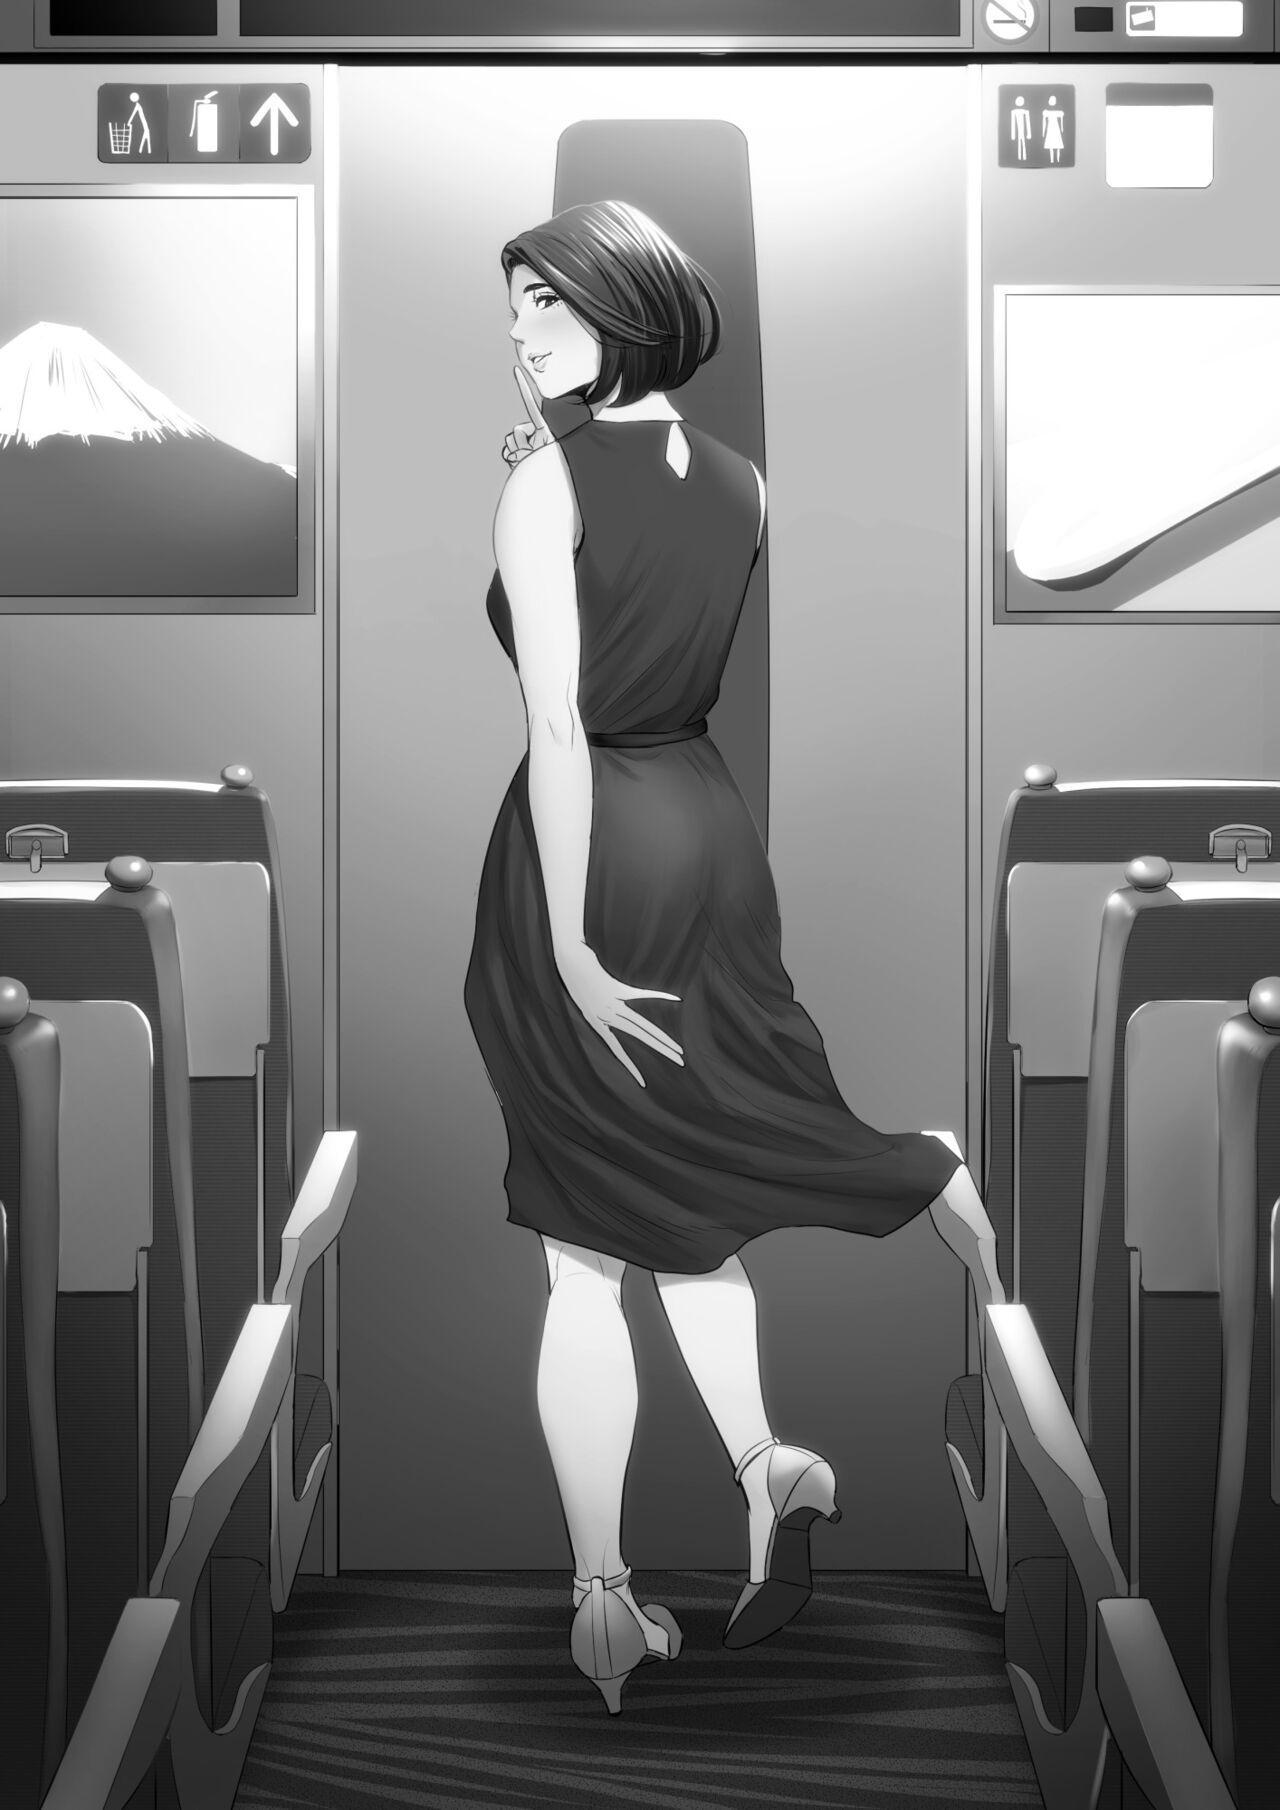 Shinkansen de Nani shiteru!? - We're On the Bullet Train! What Are You Doing!? 66